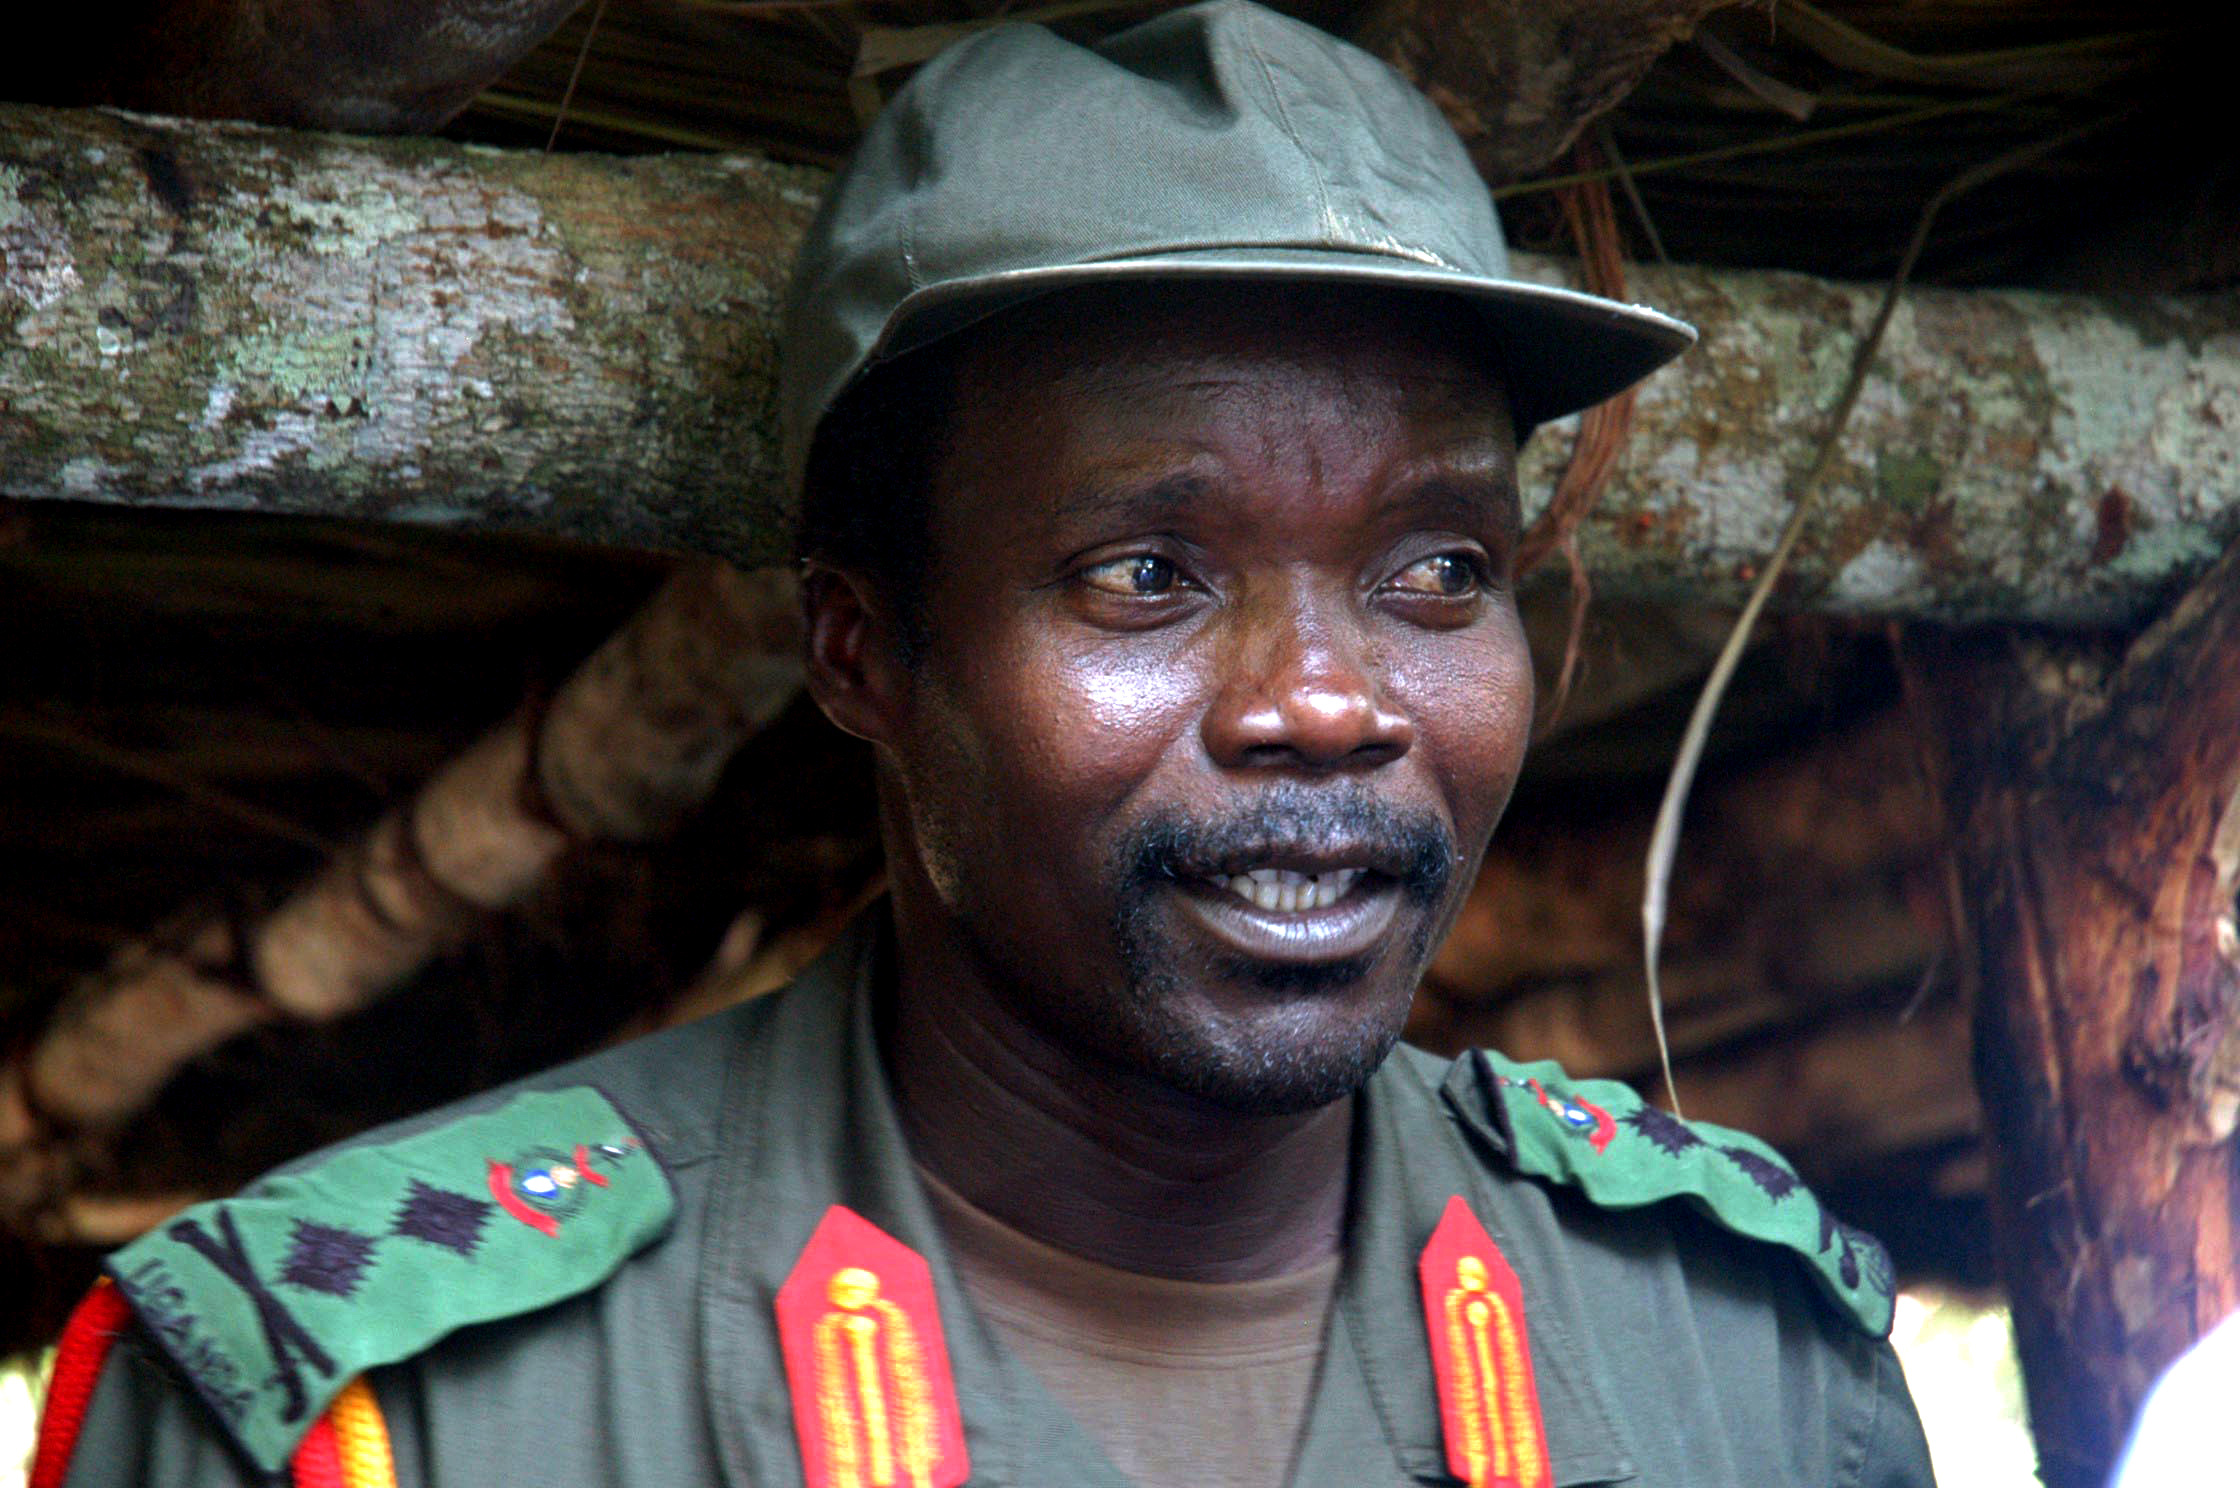 För en knapp månad sedan engagerade Joseph Kony och Herrens motståndsarmé nästan alla med Facebook och Twitter. Men nu visar statistiken att han inte är lika "het" längre.